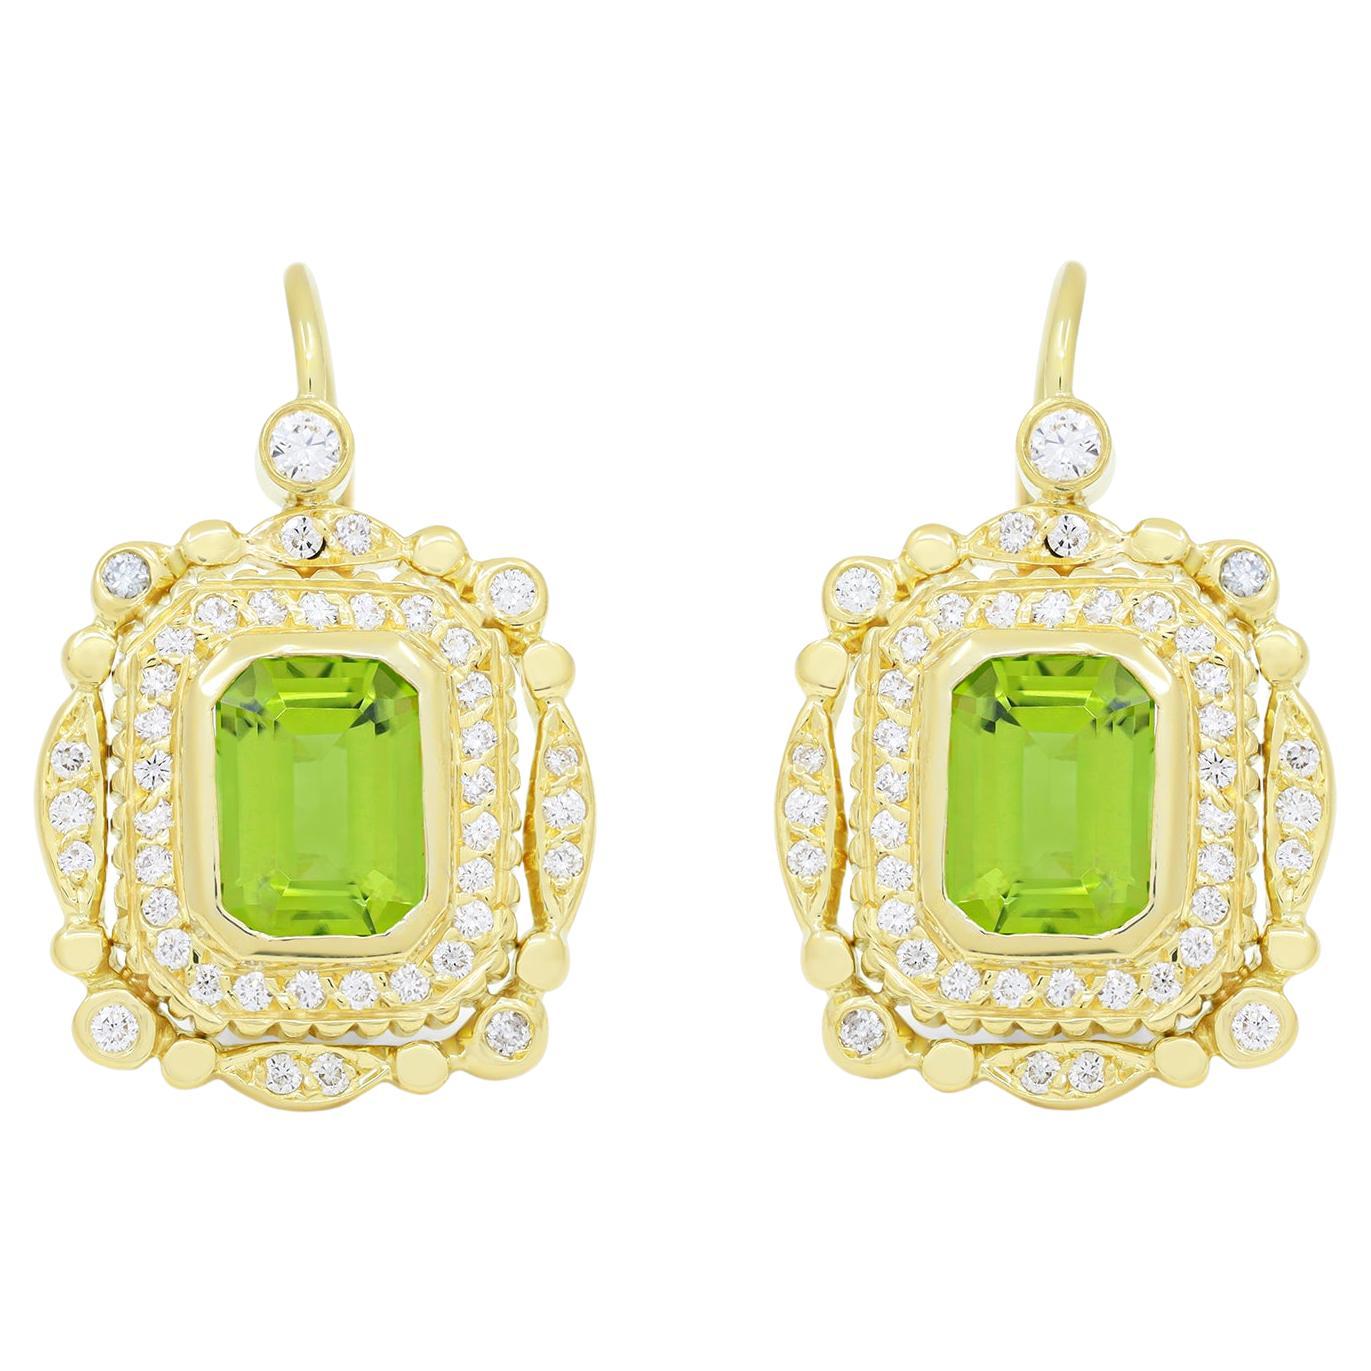 Diana M. 18KT yellow gold diamond peridot earrings 5.00cts  